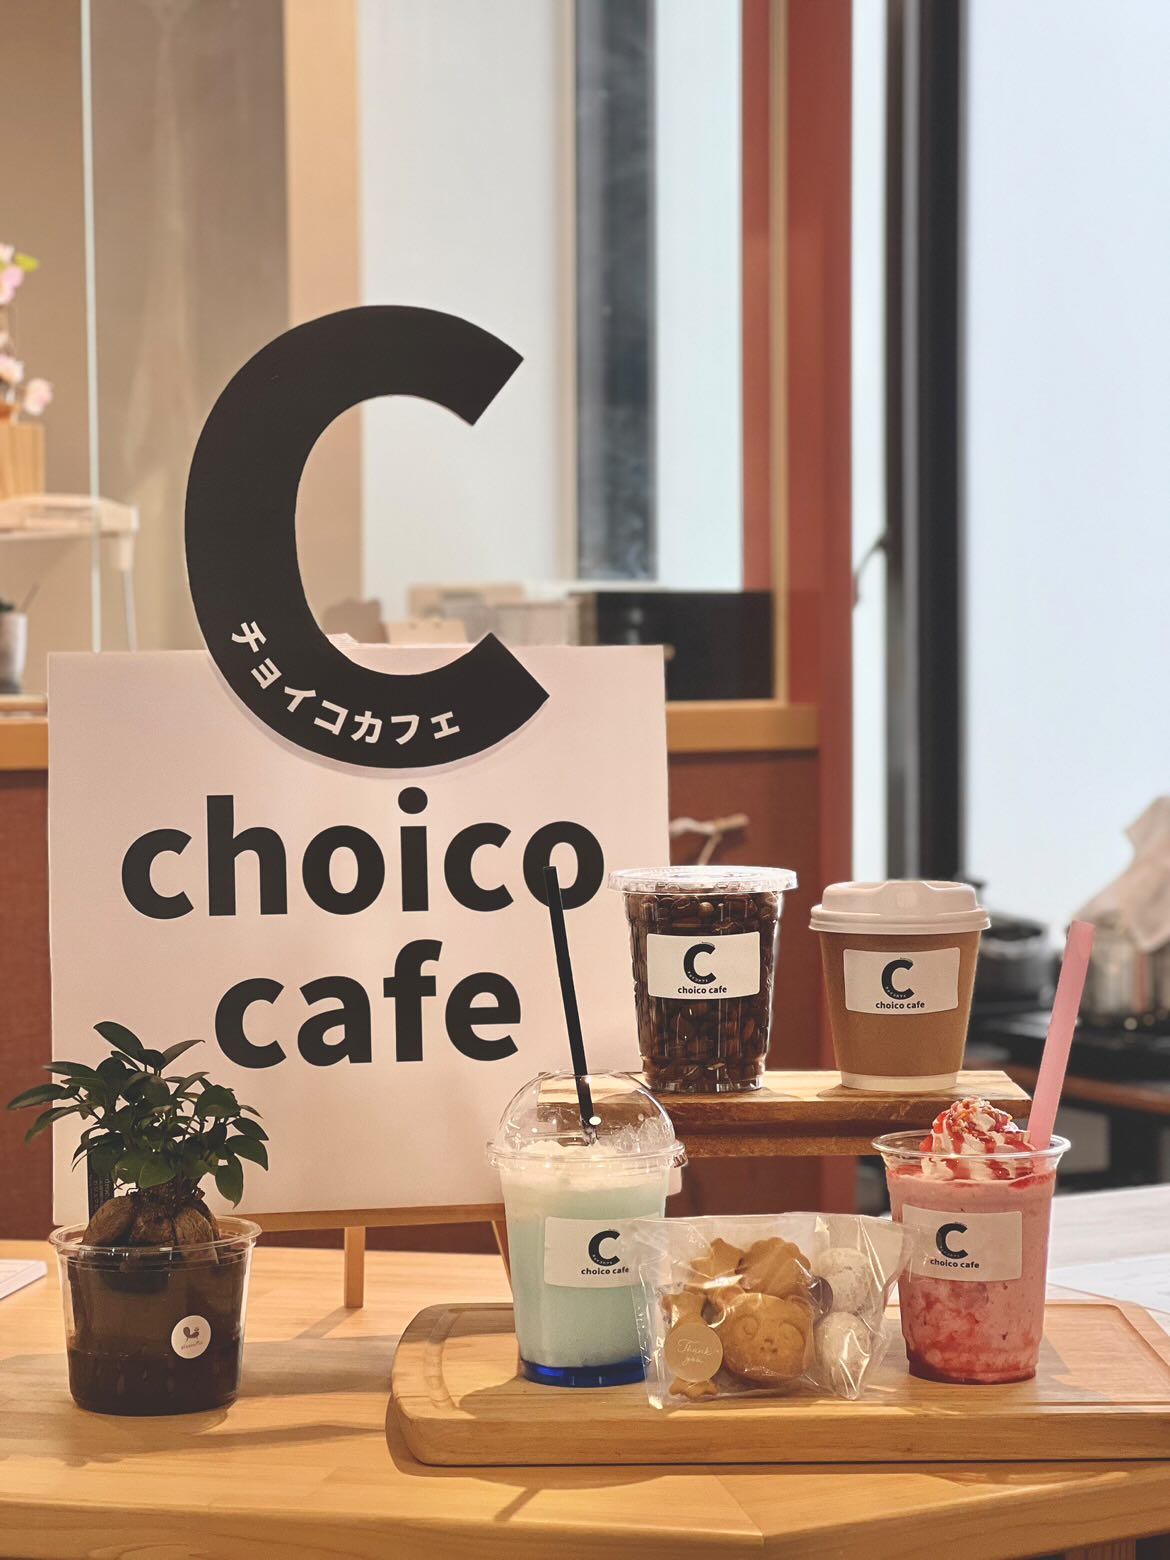 カフェ「choico cafe」